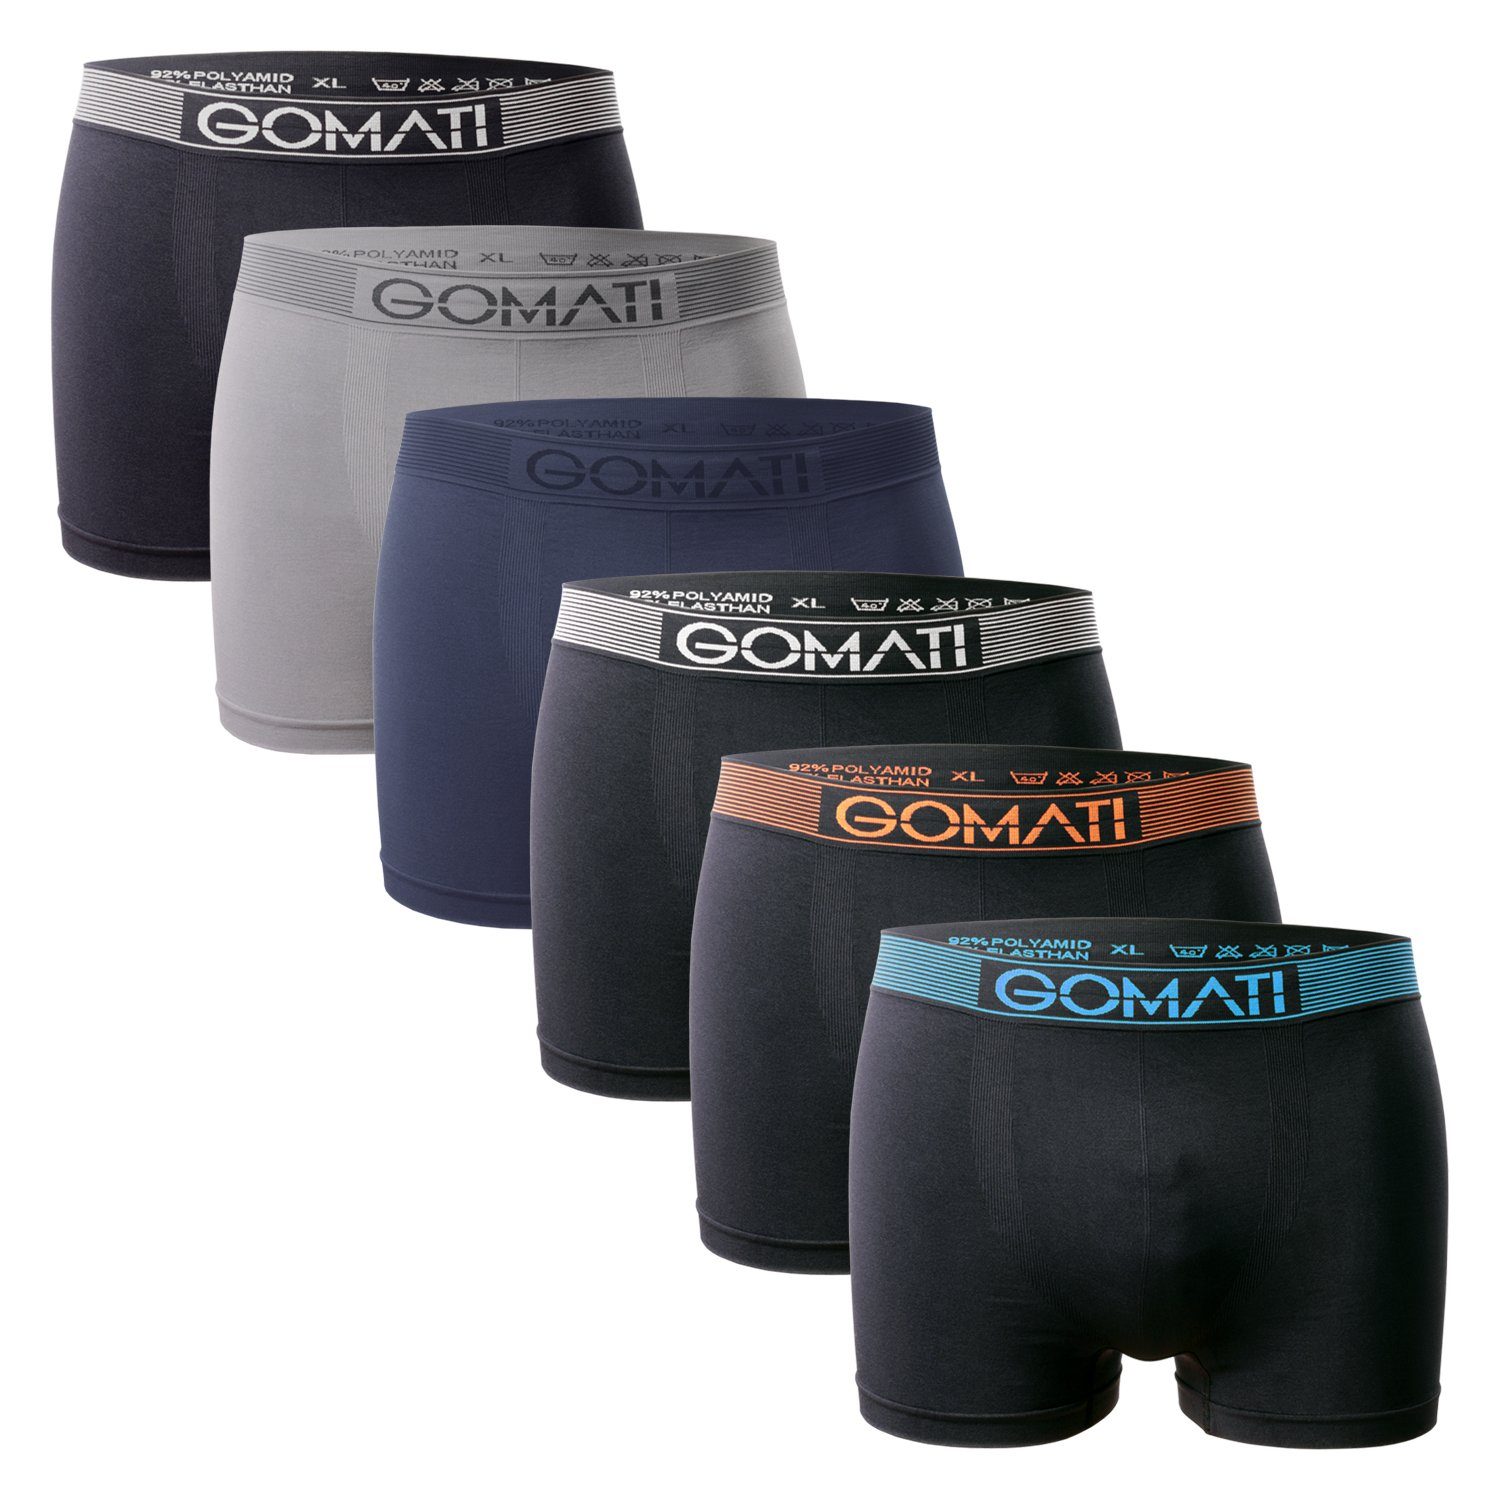 Gomati Boxershorts Herren Seamless Pants (6er Pack) Microfaser-Elasthan Boxershorts Black / Grey